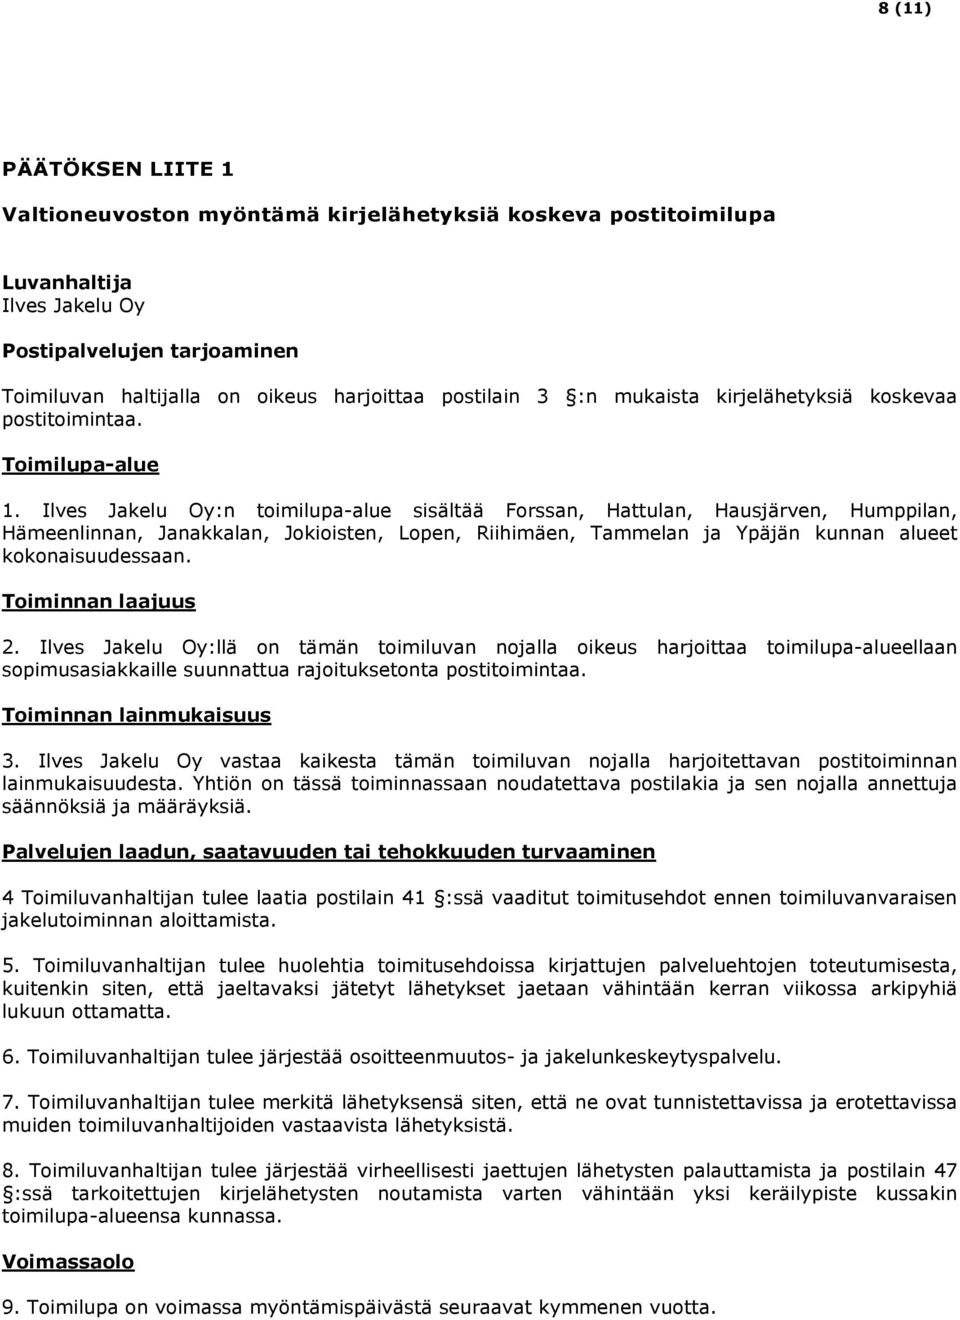 Ilves Jakelu Oy:n toimilupa-alue sisältää Forssan, Hattulan, Hausjärven, Humppilan, Hämeenlinnan, Janakkalan, Jokioisten, Lopen, Riihimäen, Tammelan ja Ypäjän kunnan alueet kokonaisuudessaan.